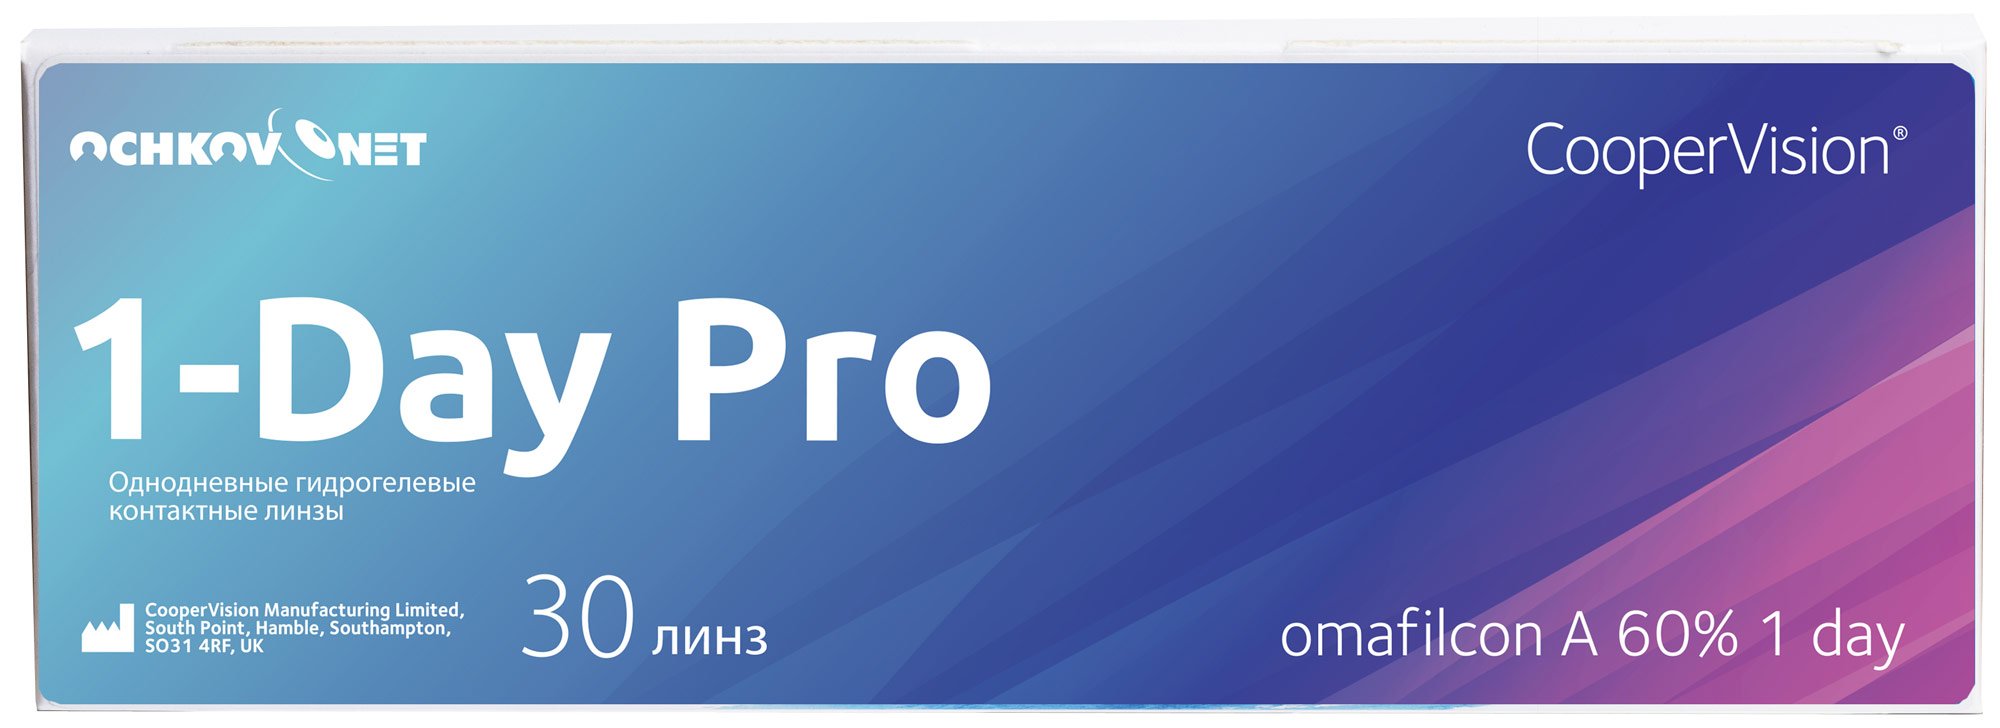 Купить Контактные линзы Ochkov.Net 1-Day Pro 30 линз 8.7, +4.25